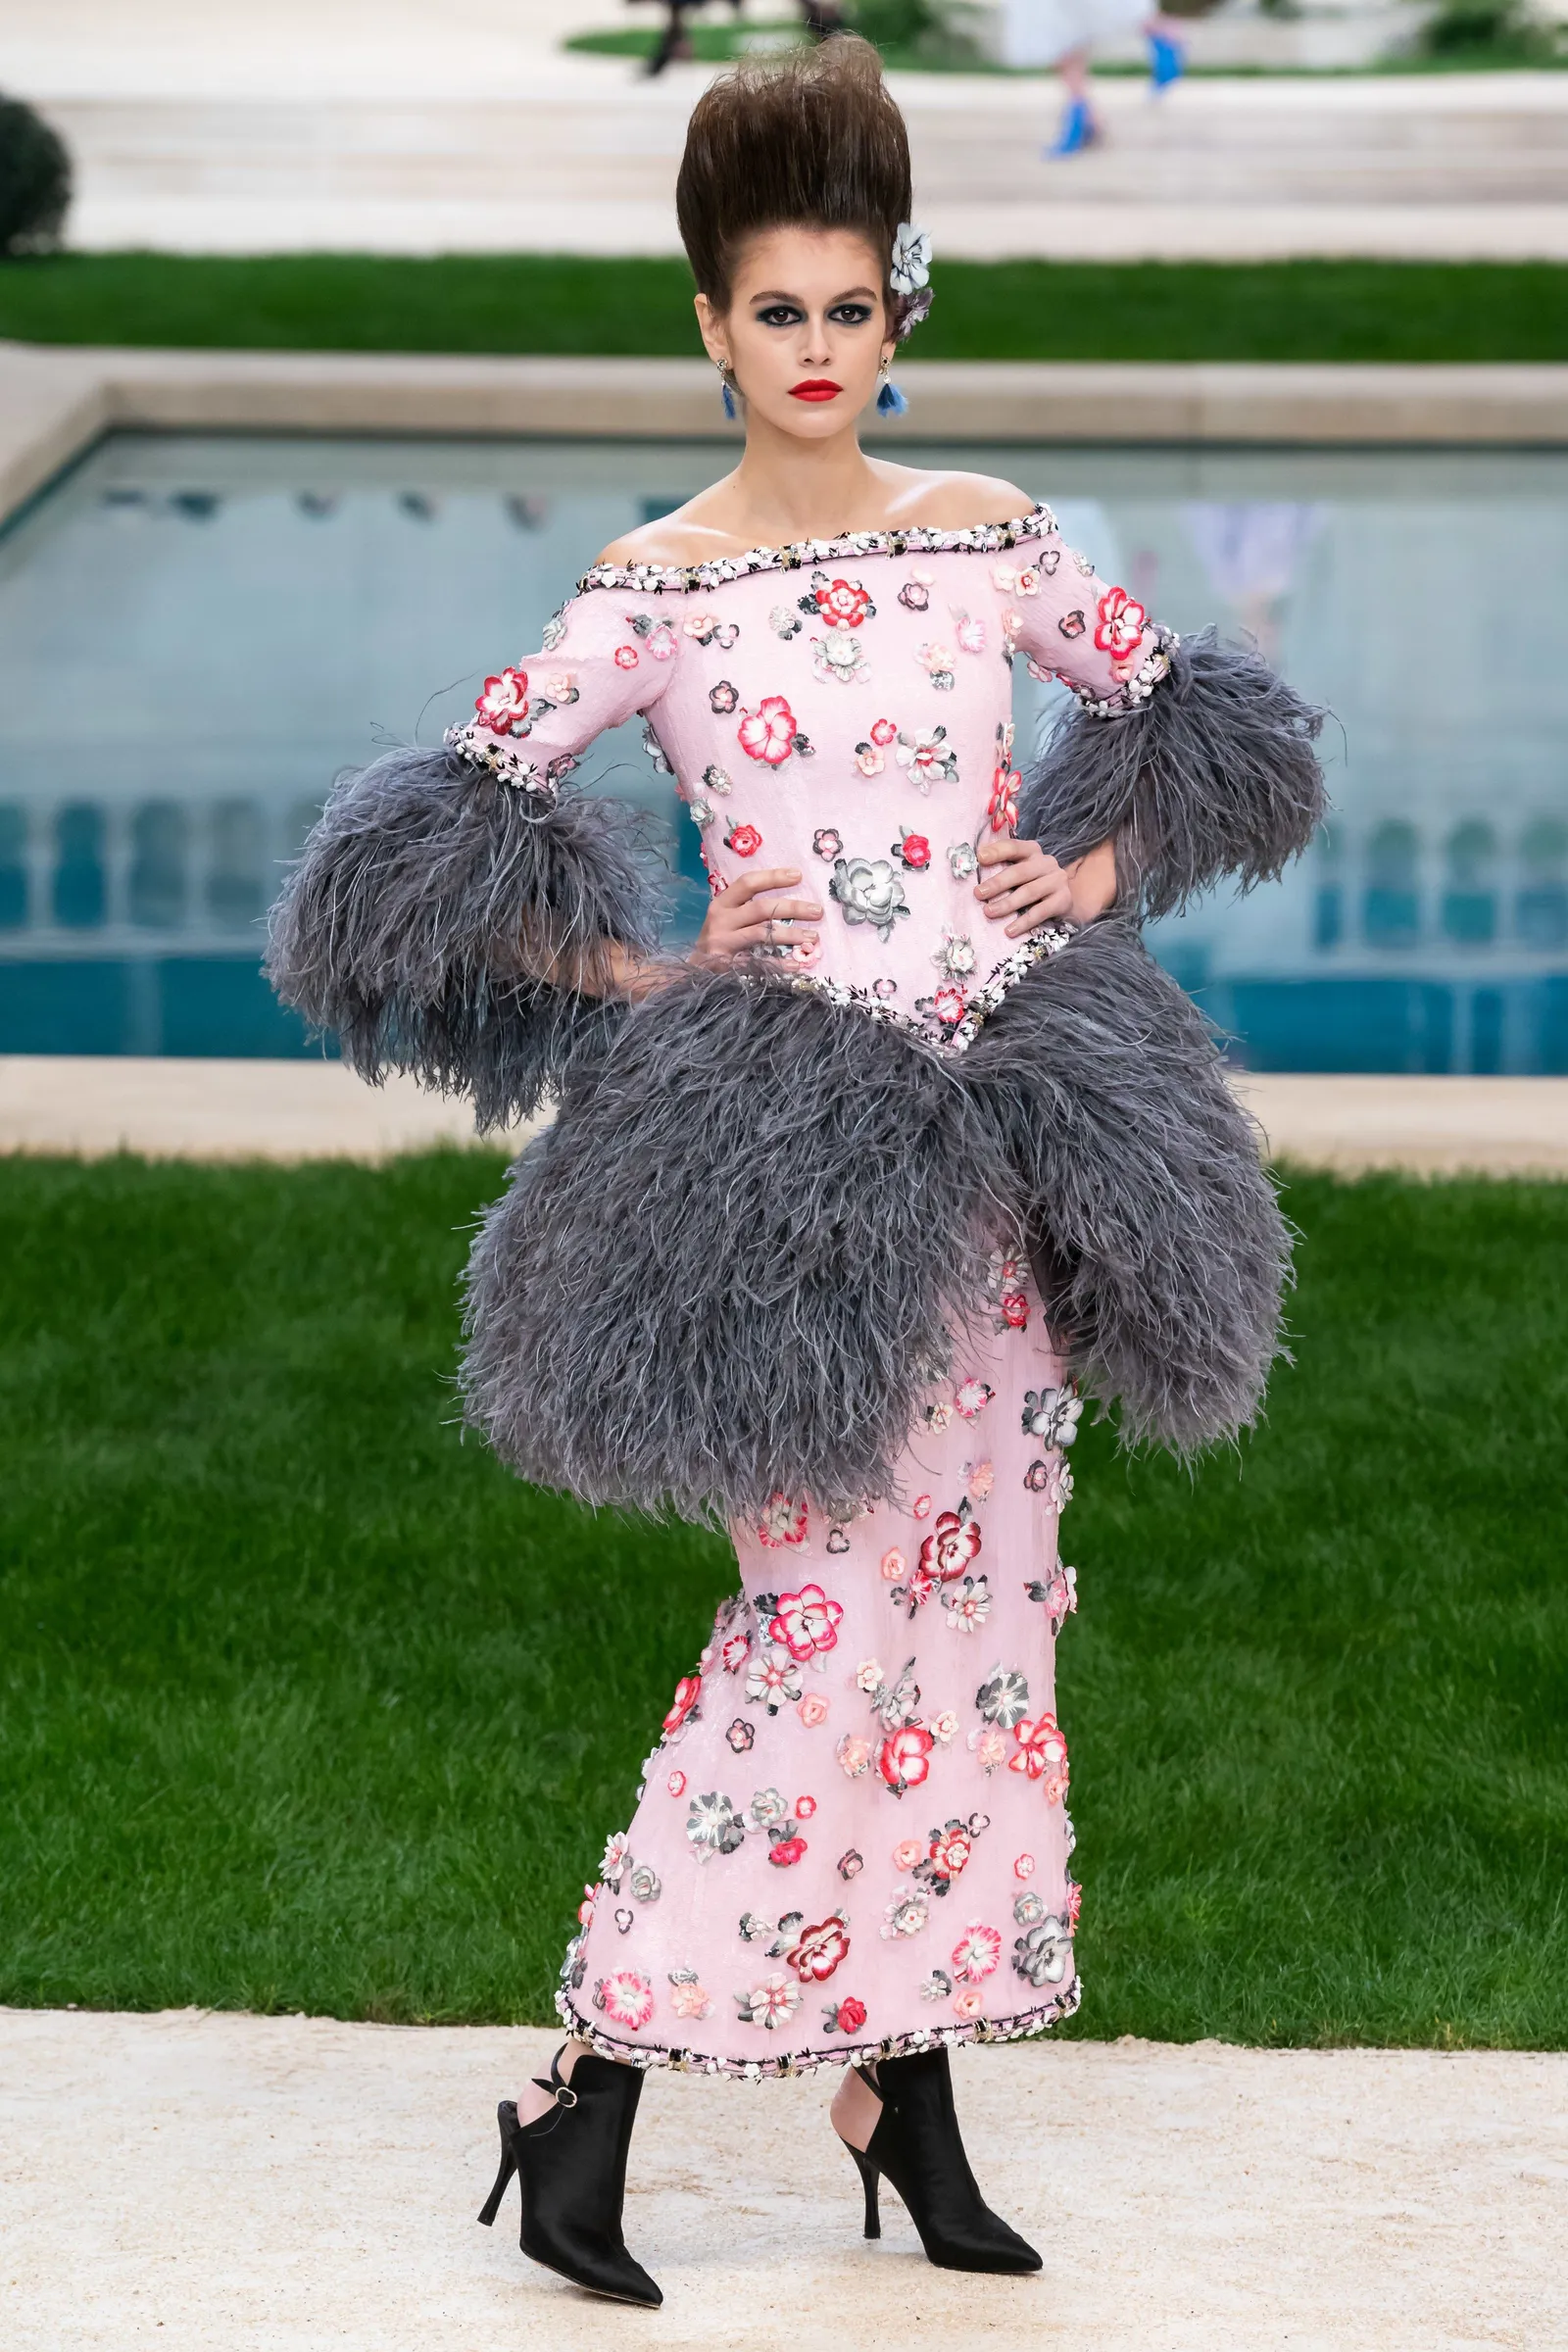 Chanel Pamerkan Busana Mewah A la Abad 18 Pada Koleksi Haute Couture 